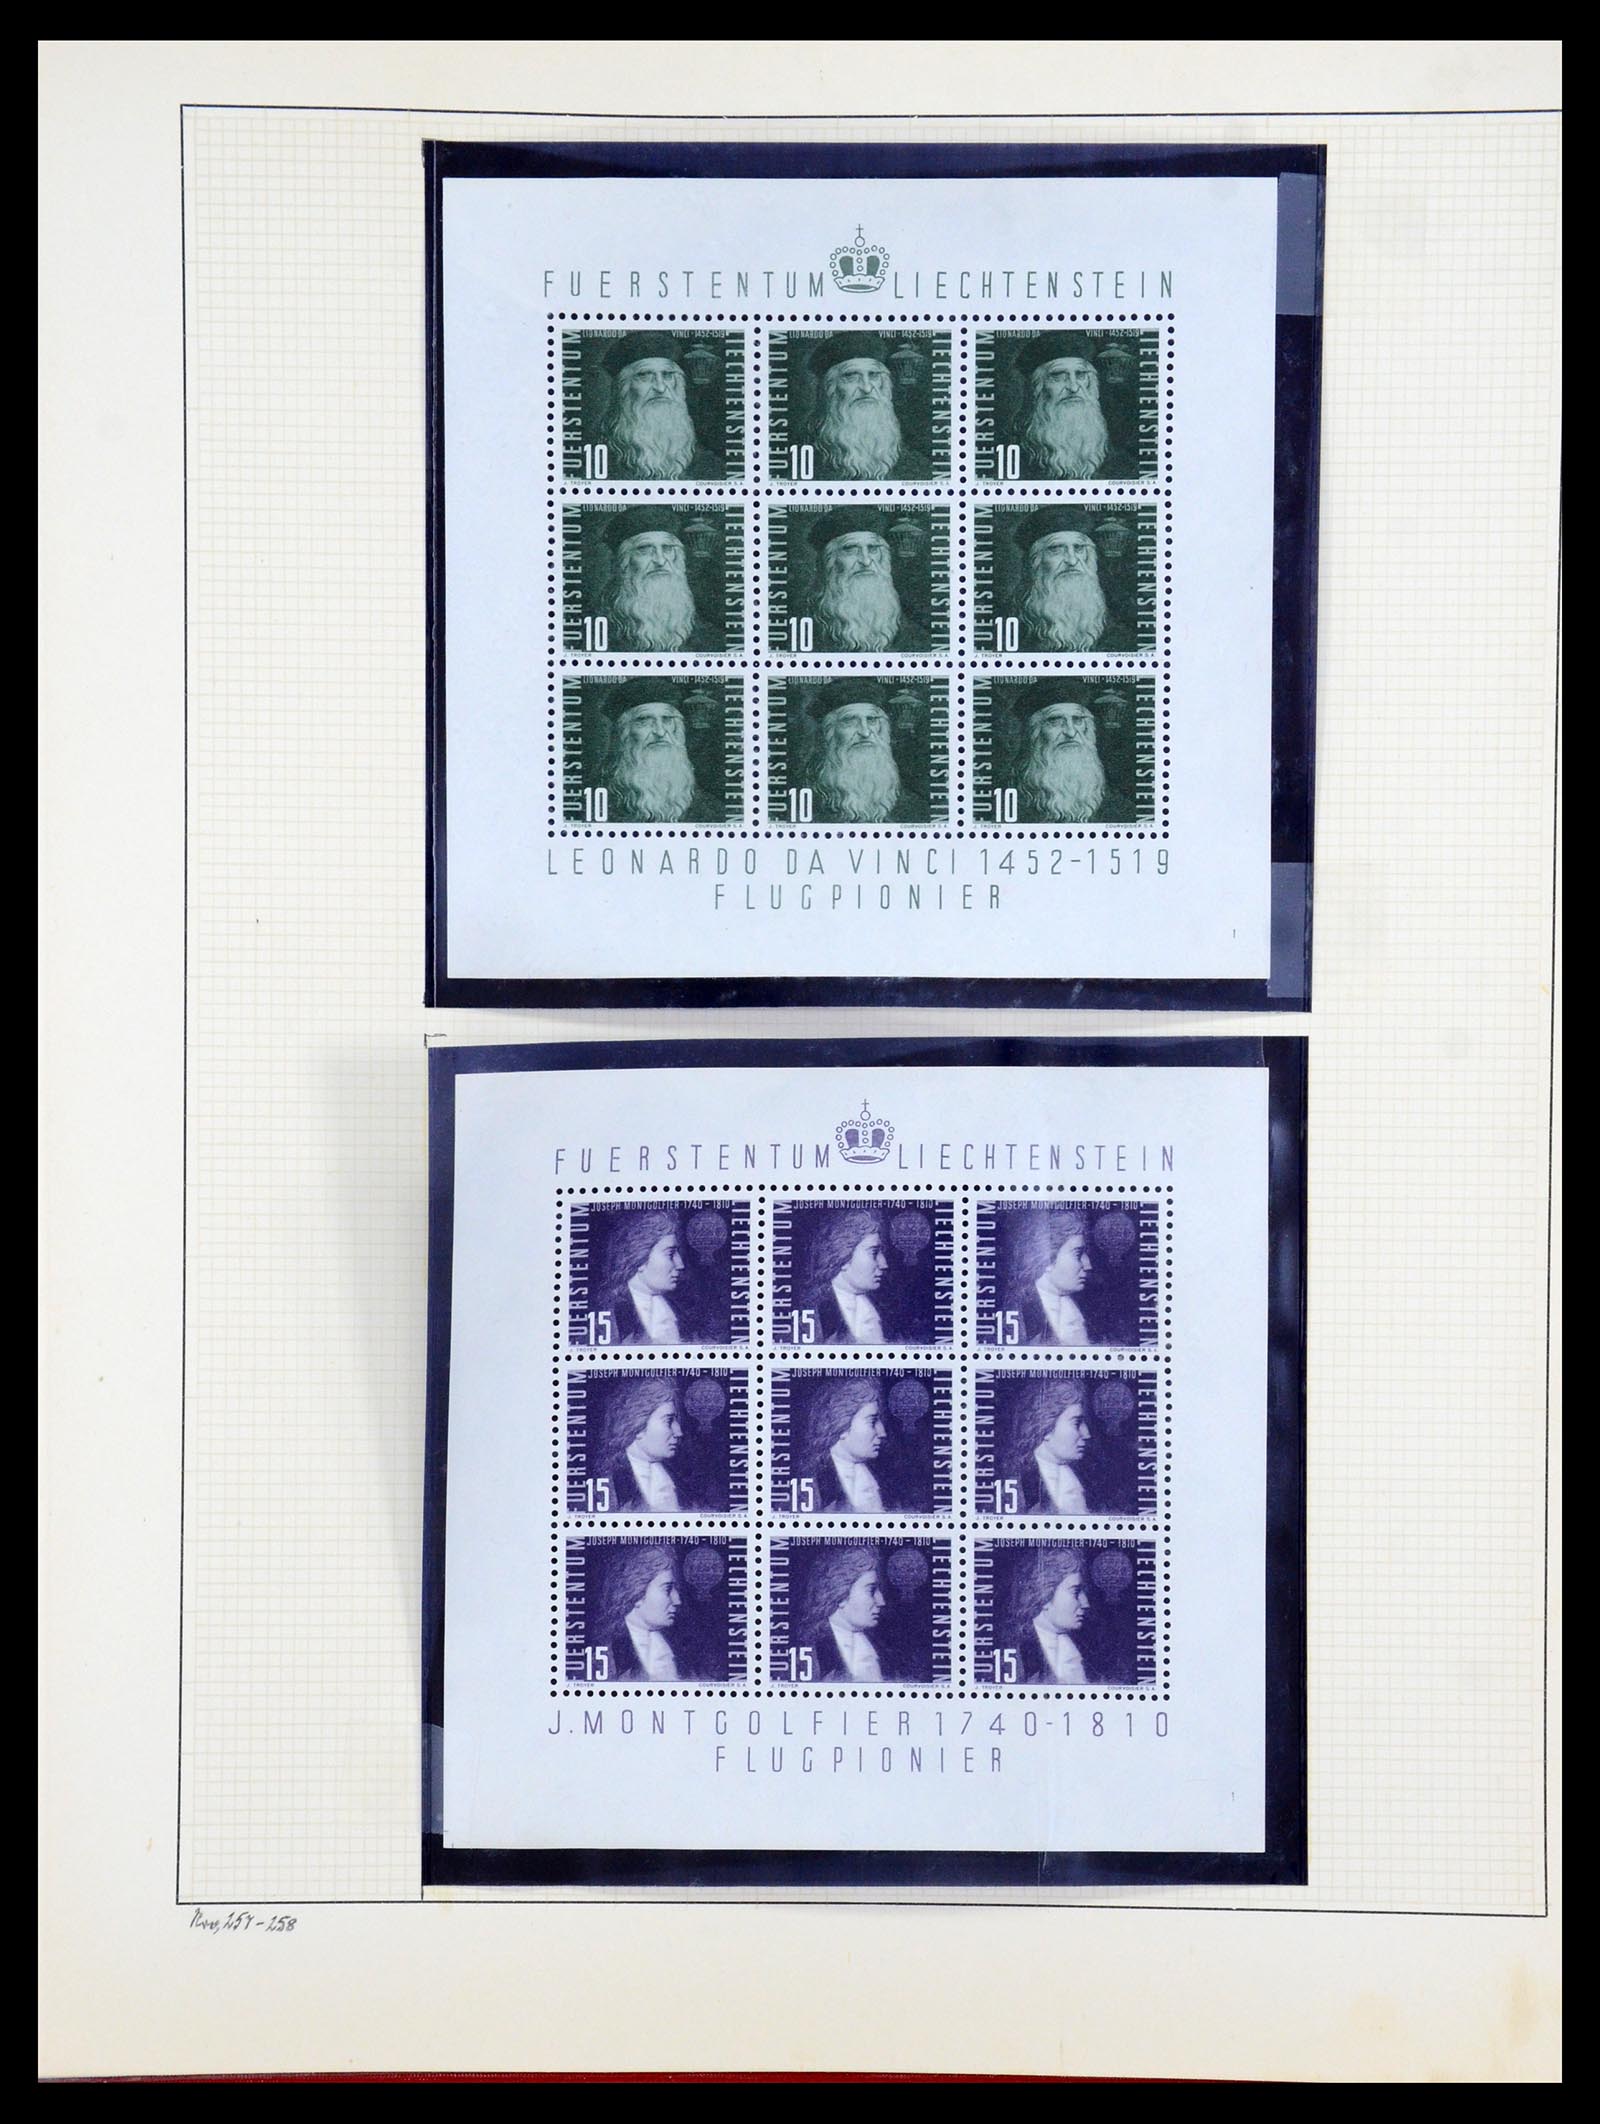 36280 055 - Stamp collection 36280 Liechtenstein souvenir sheets and sheetlets 1934-